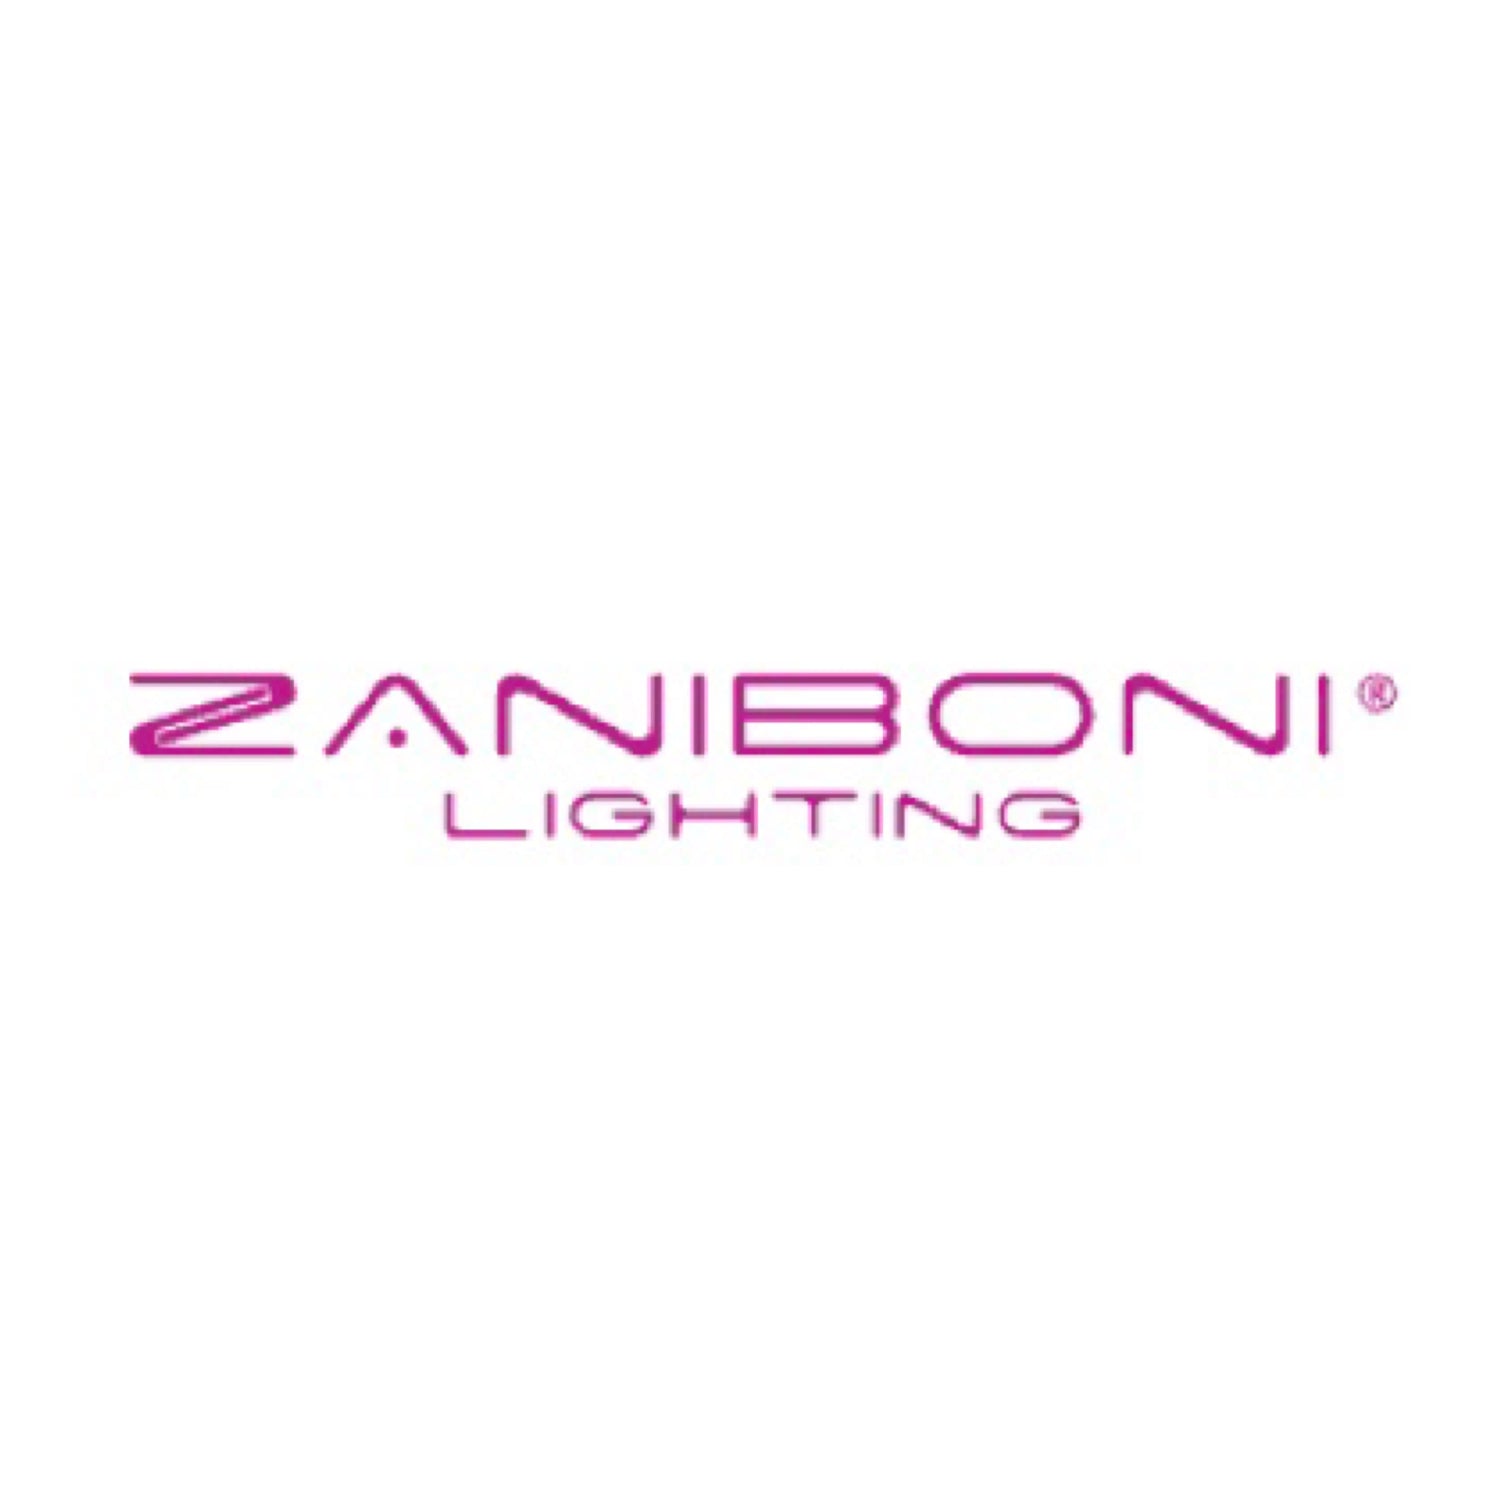 ZANIBONI LIGHTING